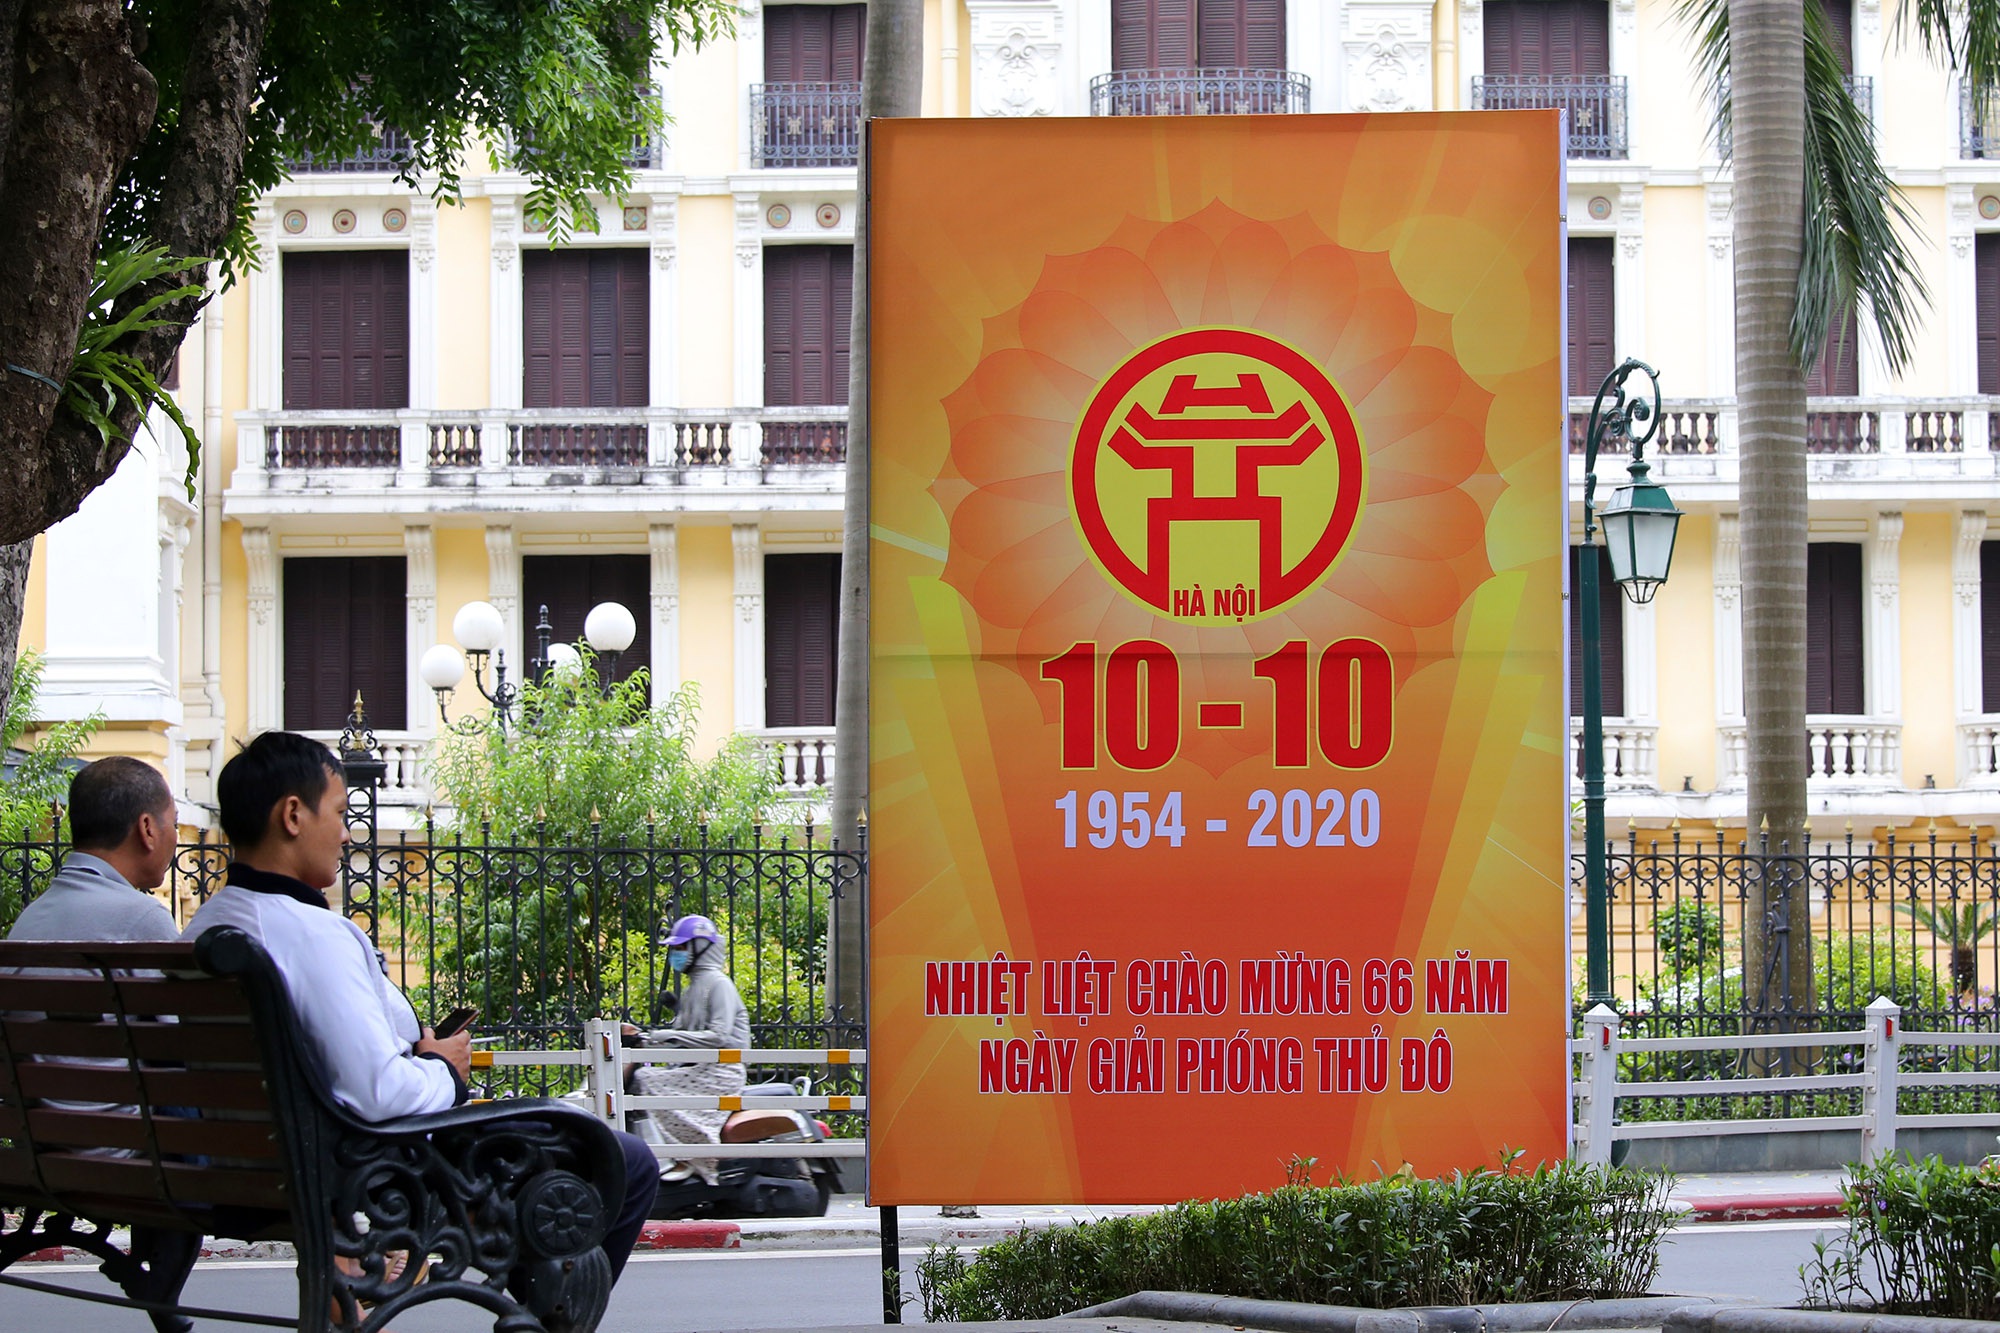 Hà Nội trang trí đường phố kỉ niệm 1010 năm Thăng Long - Hà Nội - 9